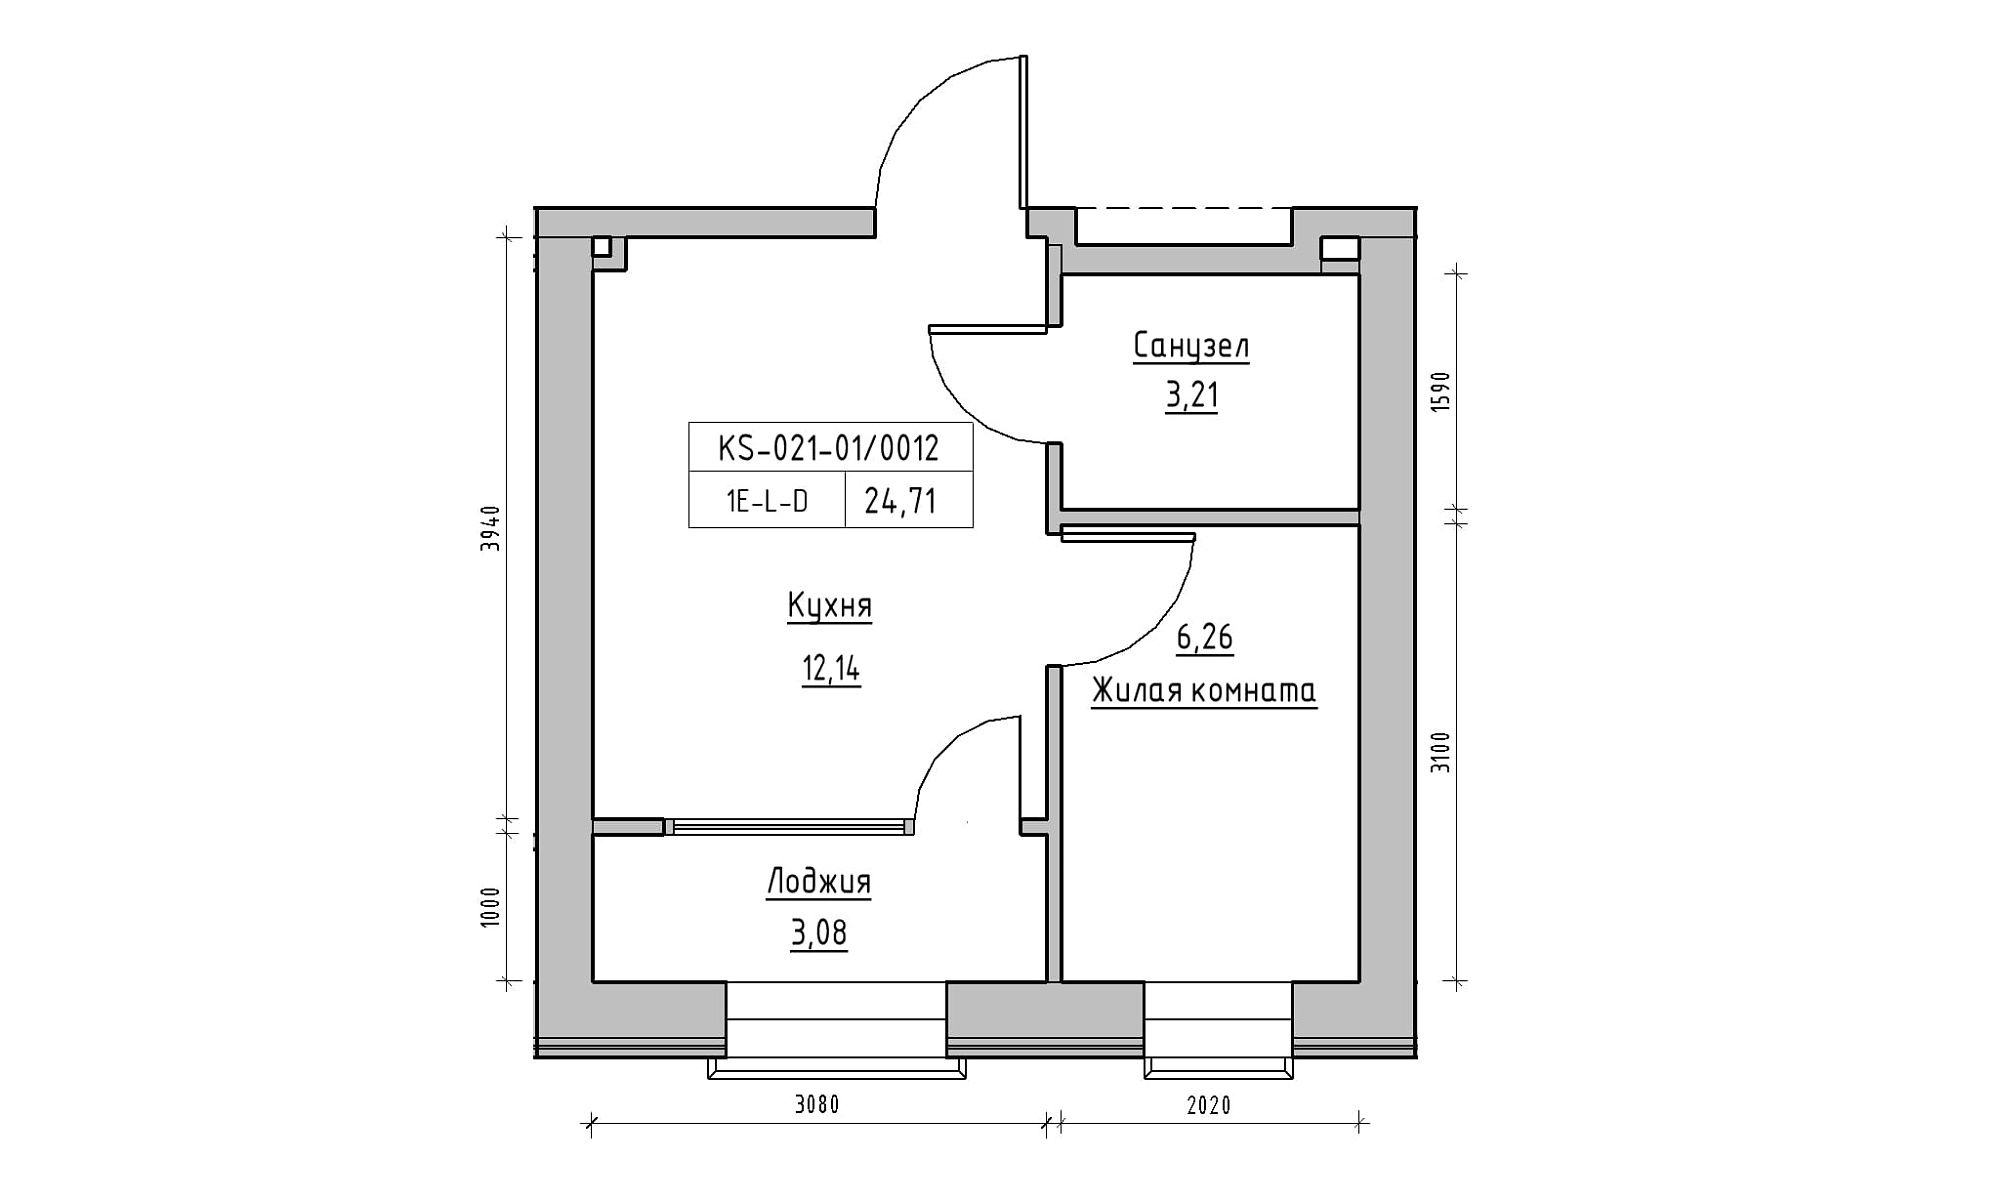 Планировка 1-к квартира площей 24.71м2, KS-021-01/0012.